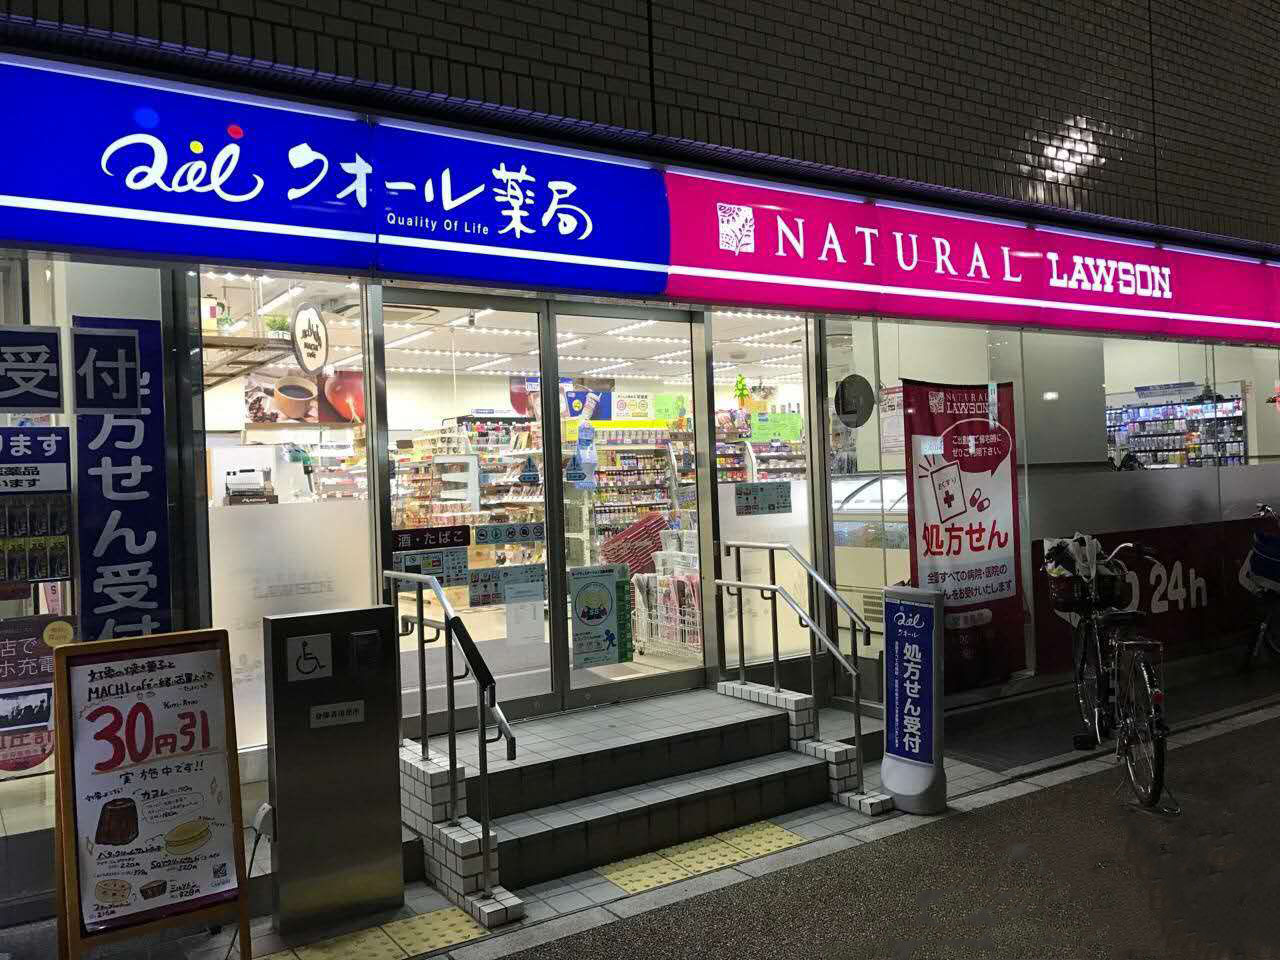 主题:看日本便利店活跃化的新业态及新型店铺的开发